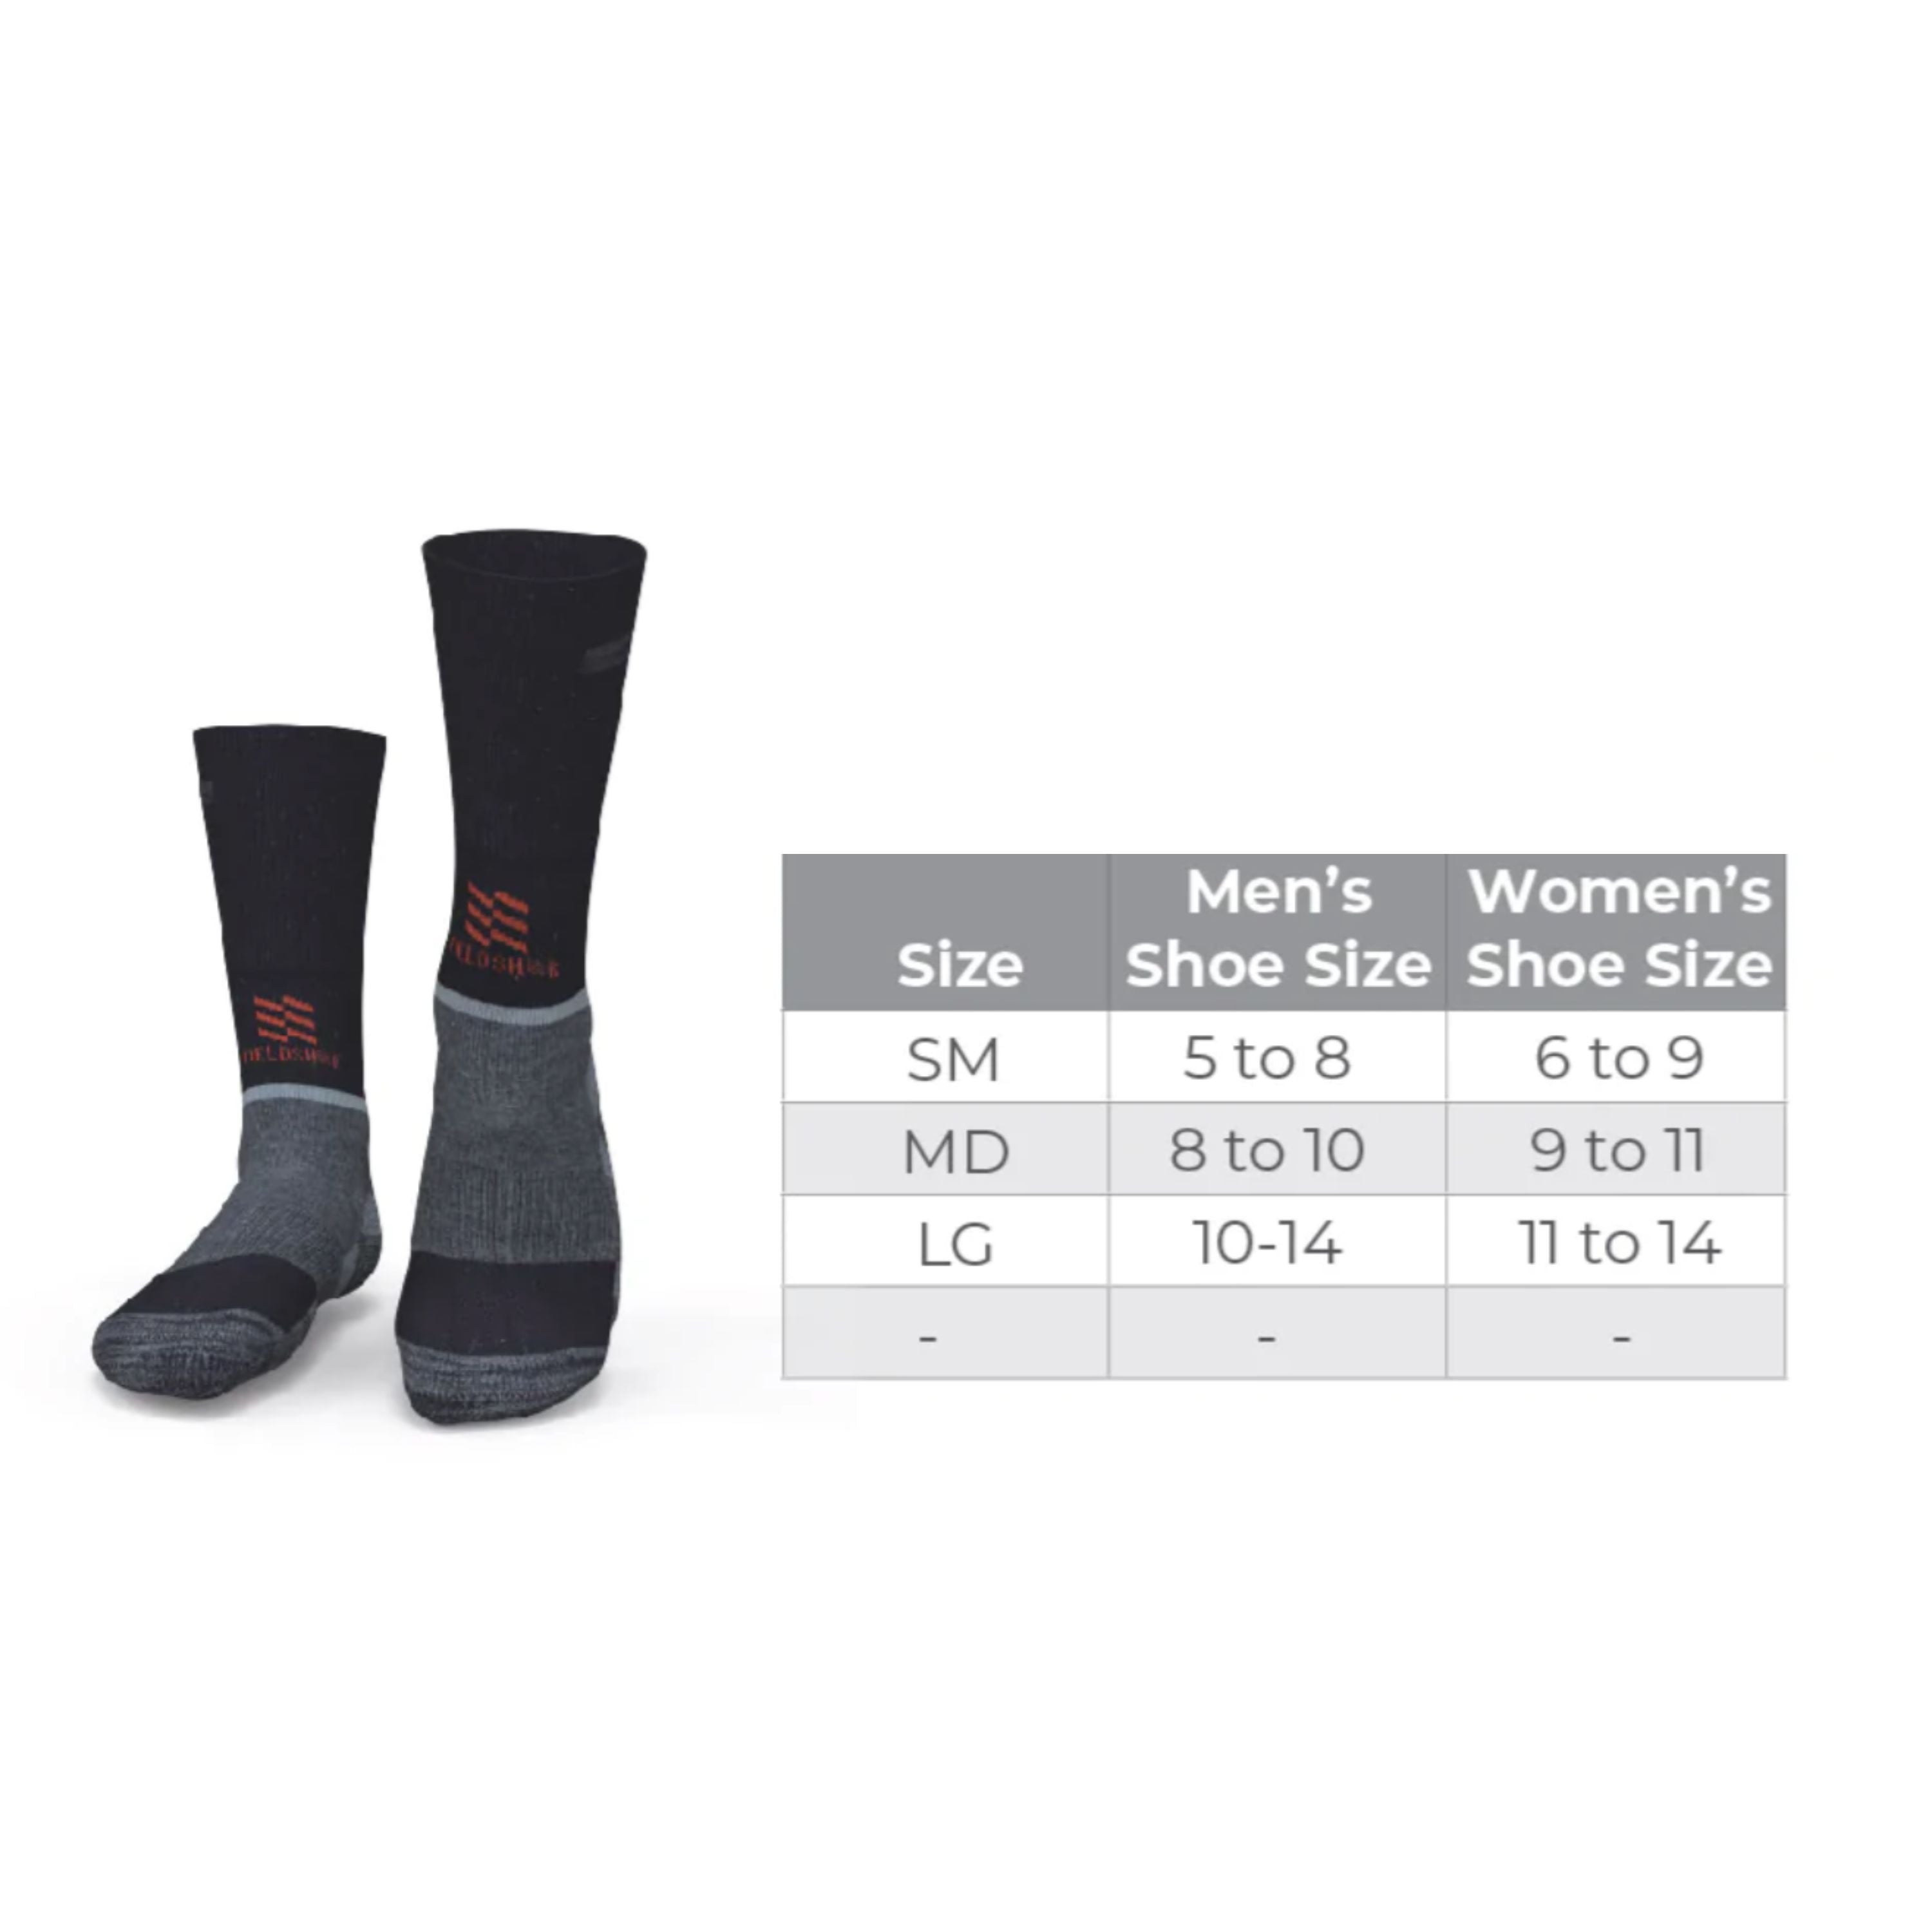 Merino heated socks - Unisex